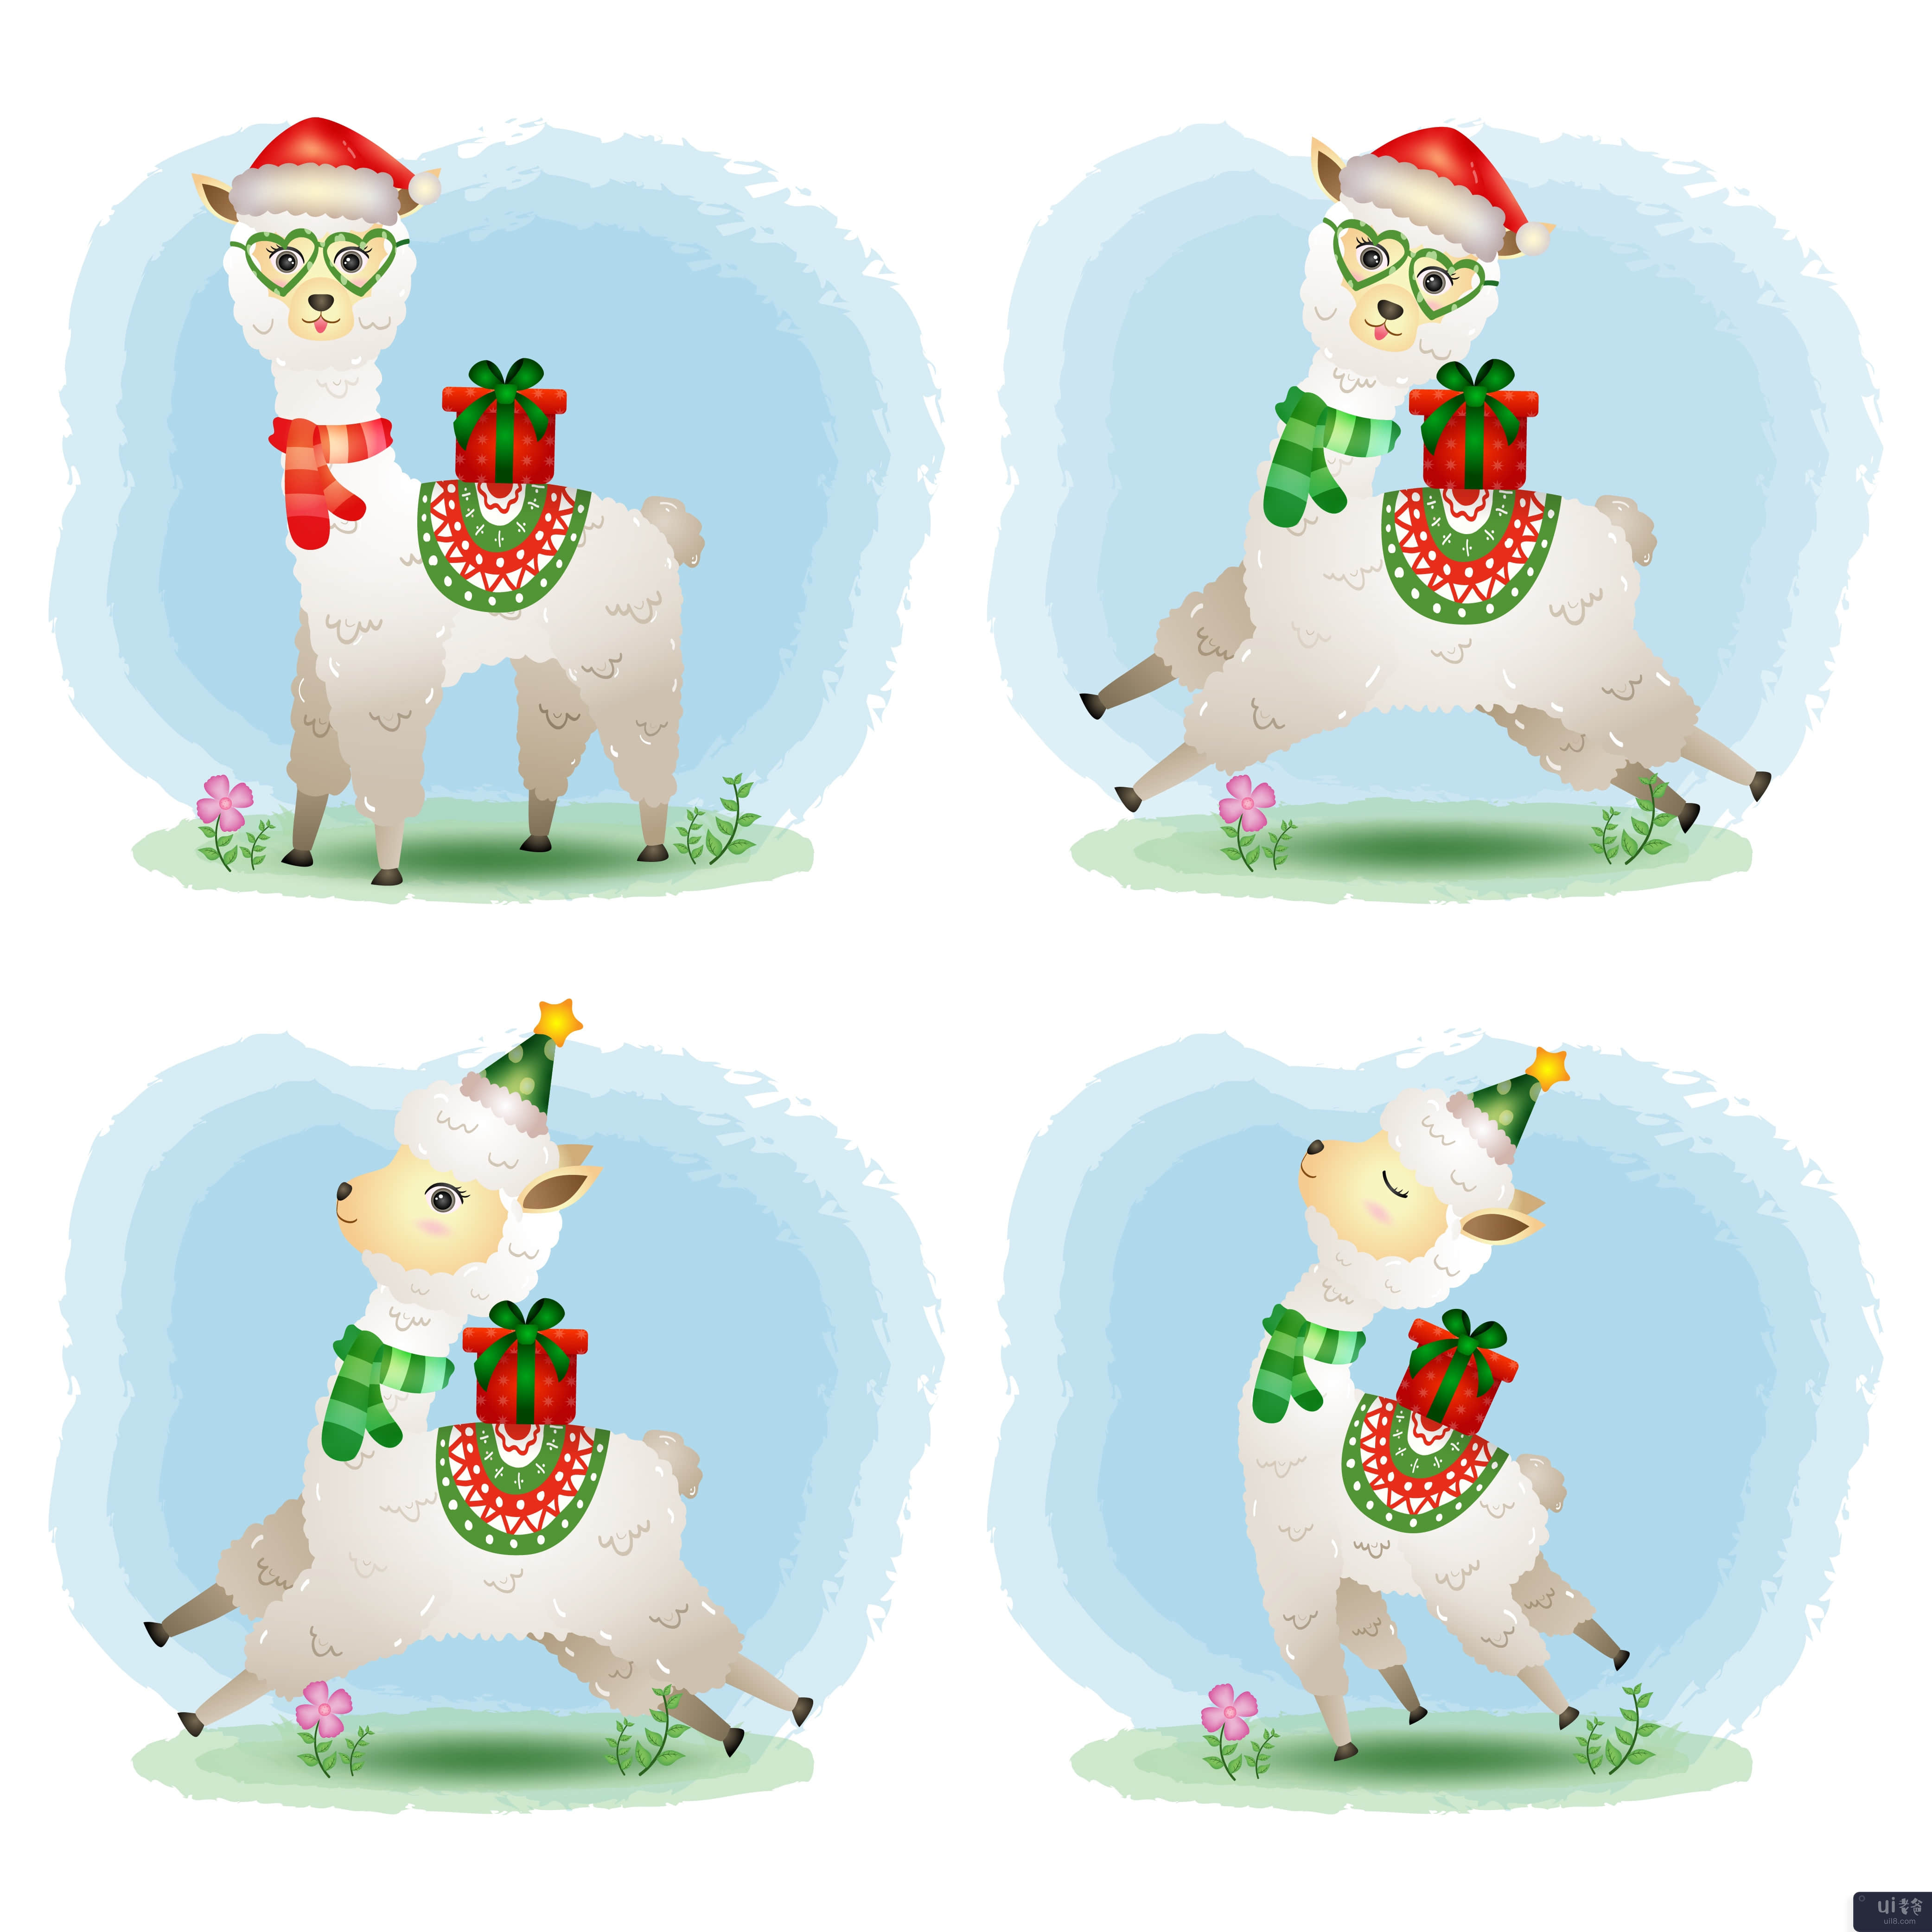 一个可爱的羊驼圣诞人物系列(a cute alpaca christmas characters collection)插图2